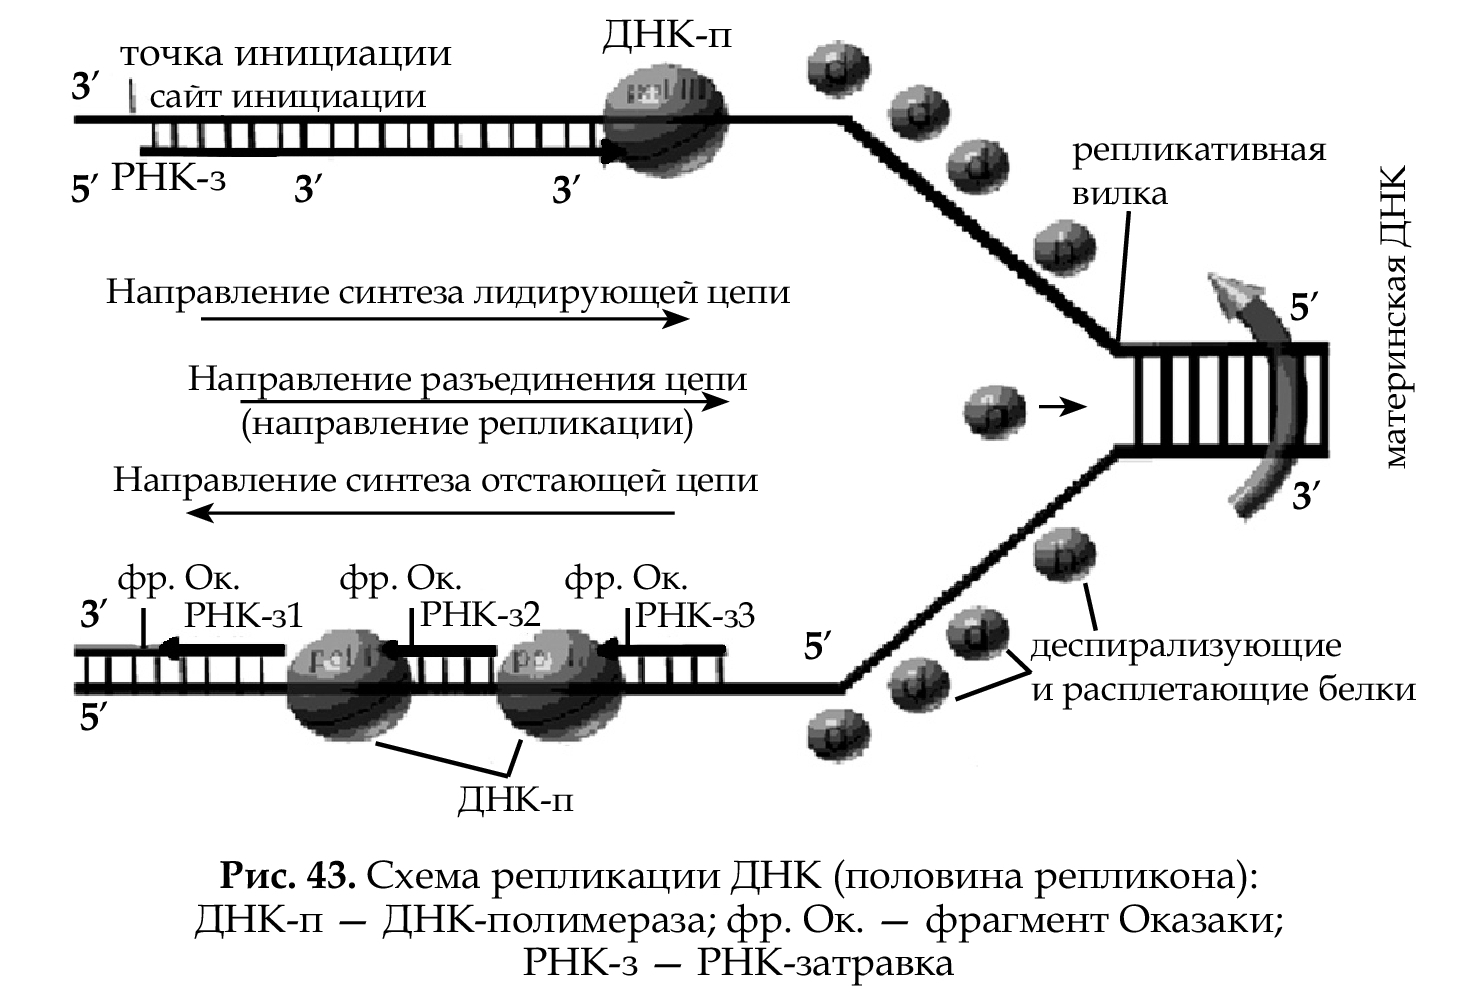 Схема репликации ДНК эукариотических клеток